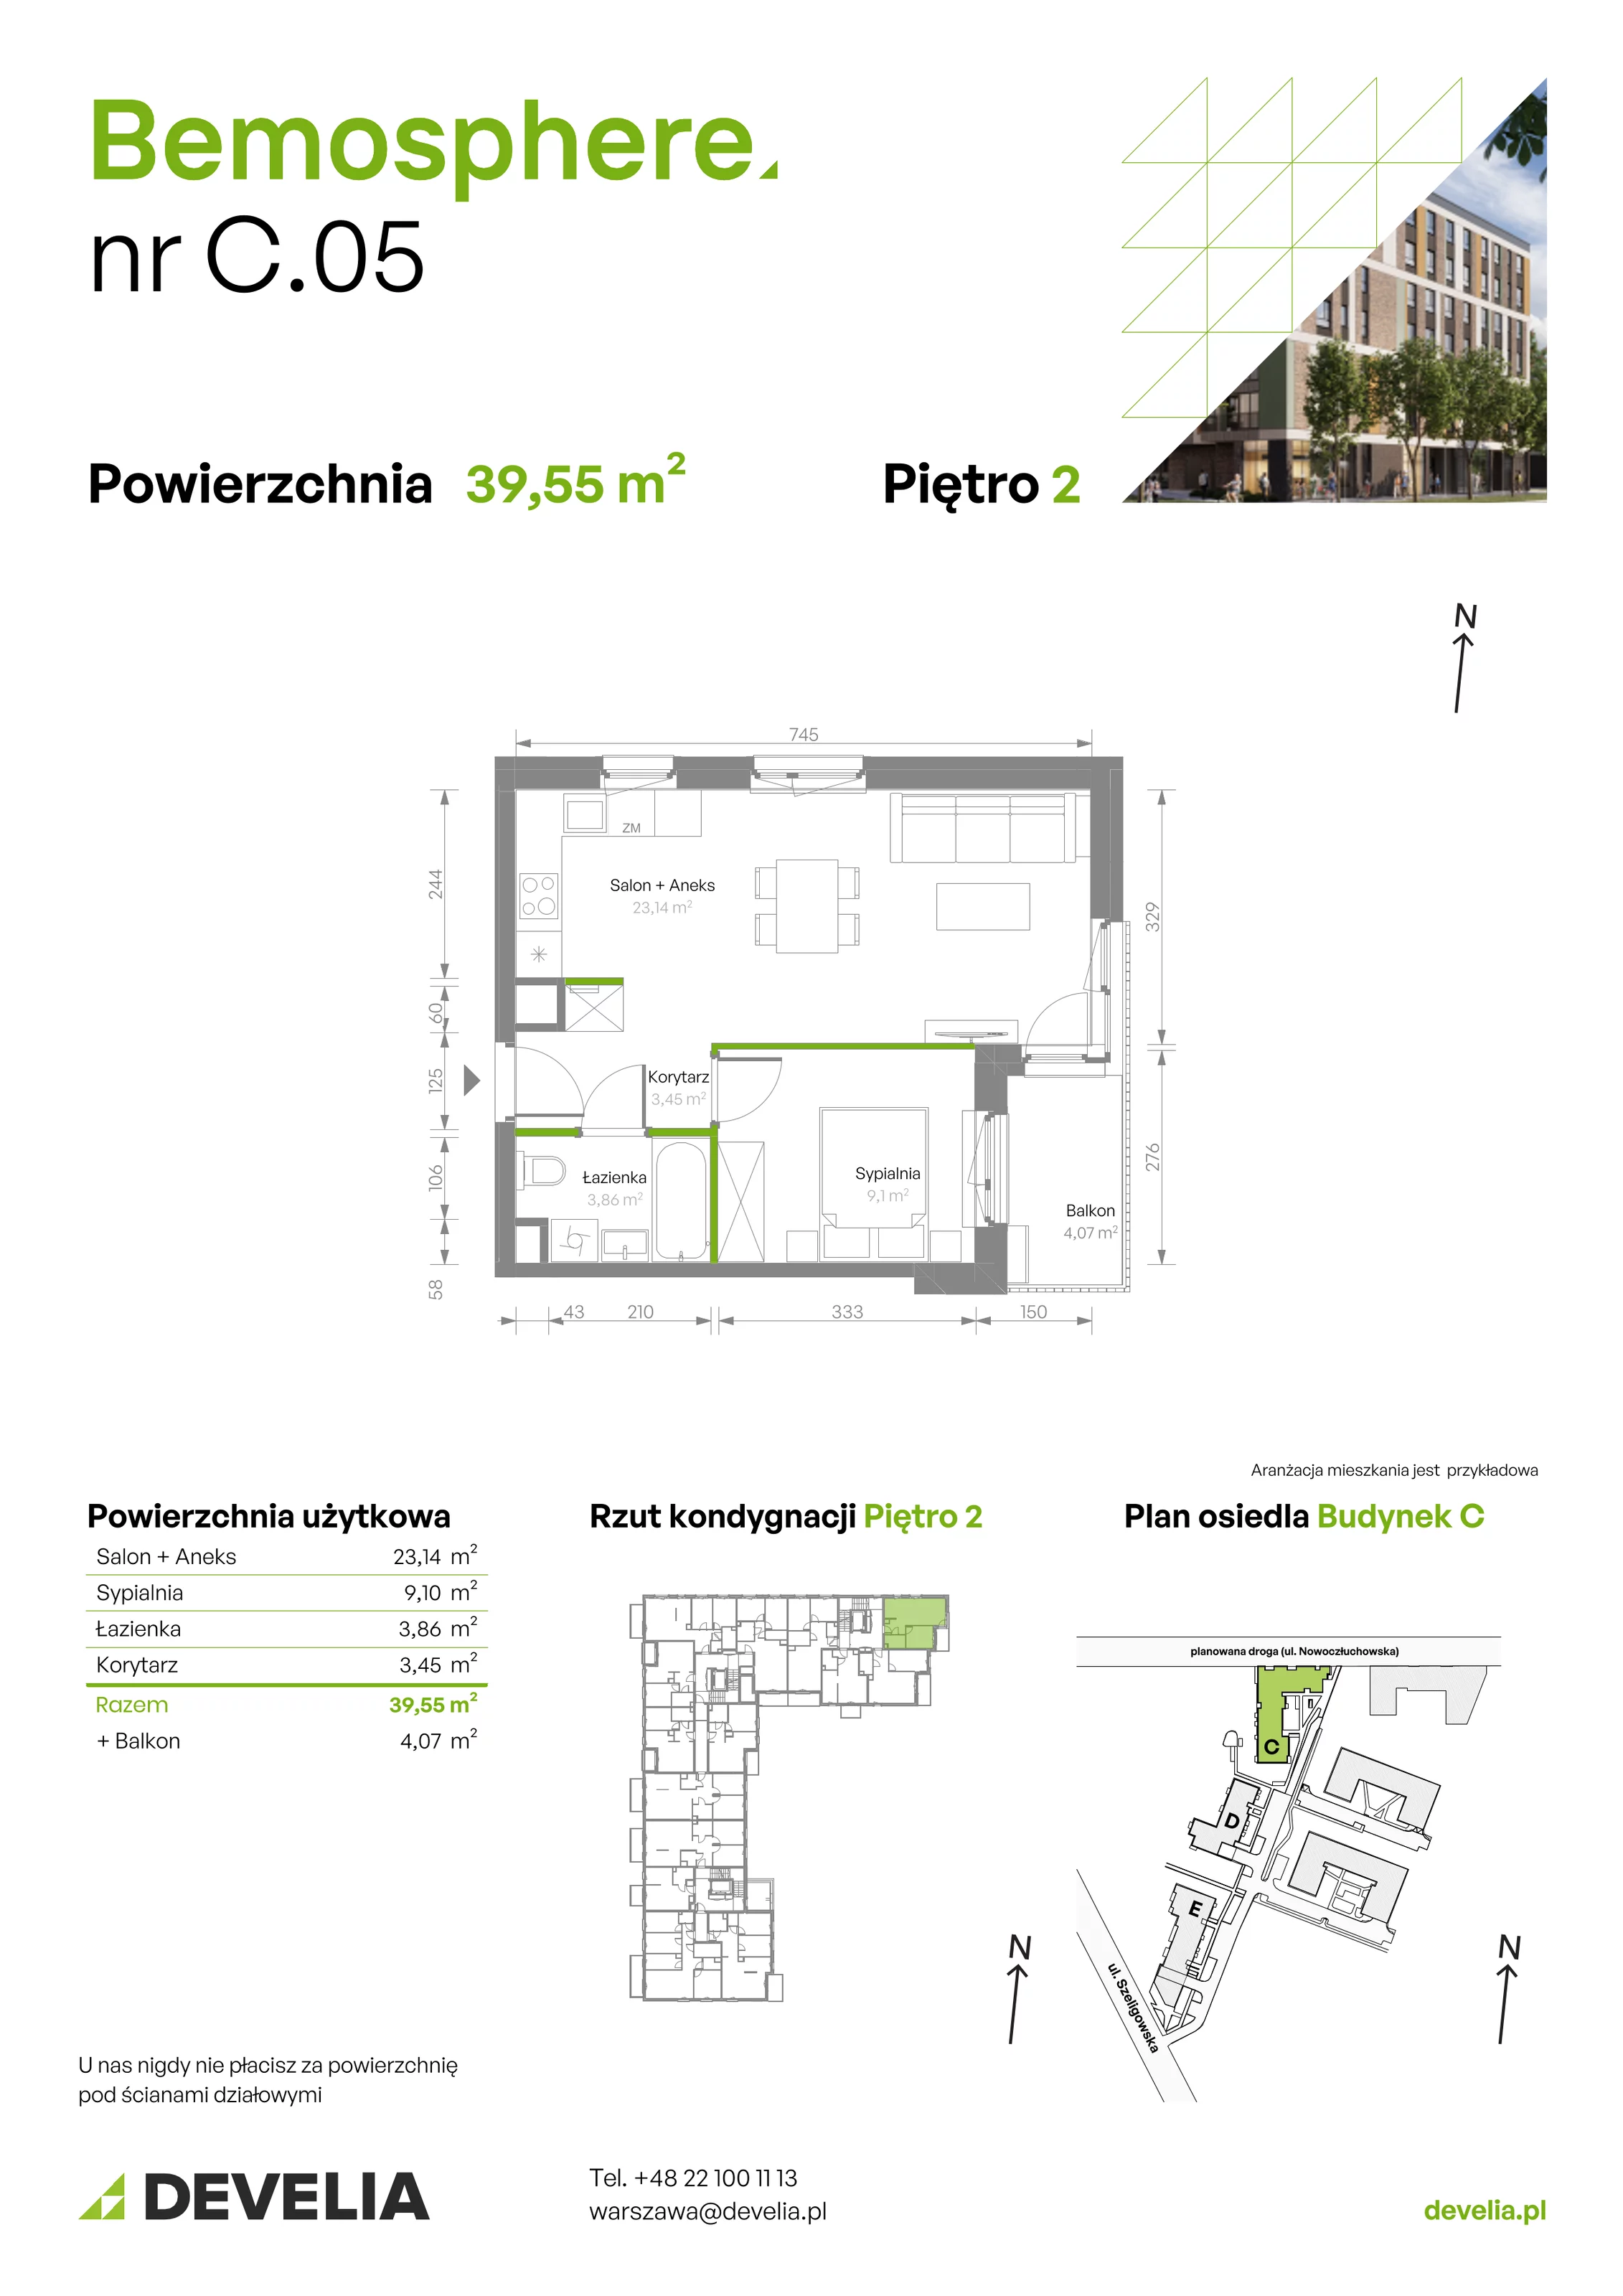 Mieszkanie 39,55 m², piętro 2, oferta nr C/005, Bemosphere, Warszawa, Bemowo, Chrzanów, ul. Szeligowska 24